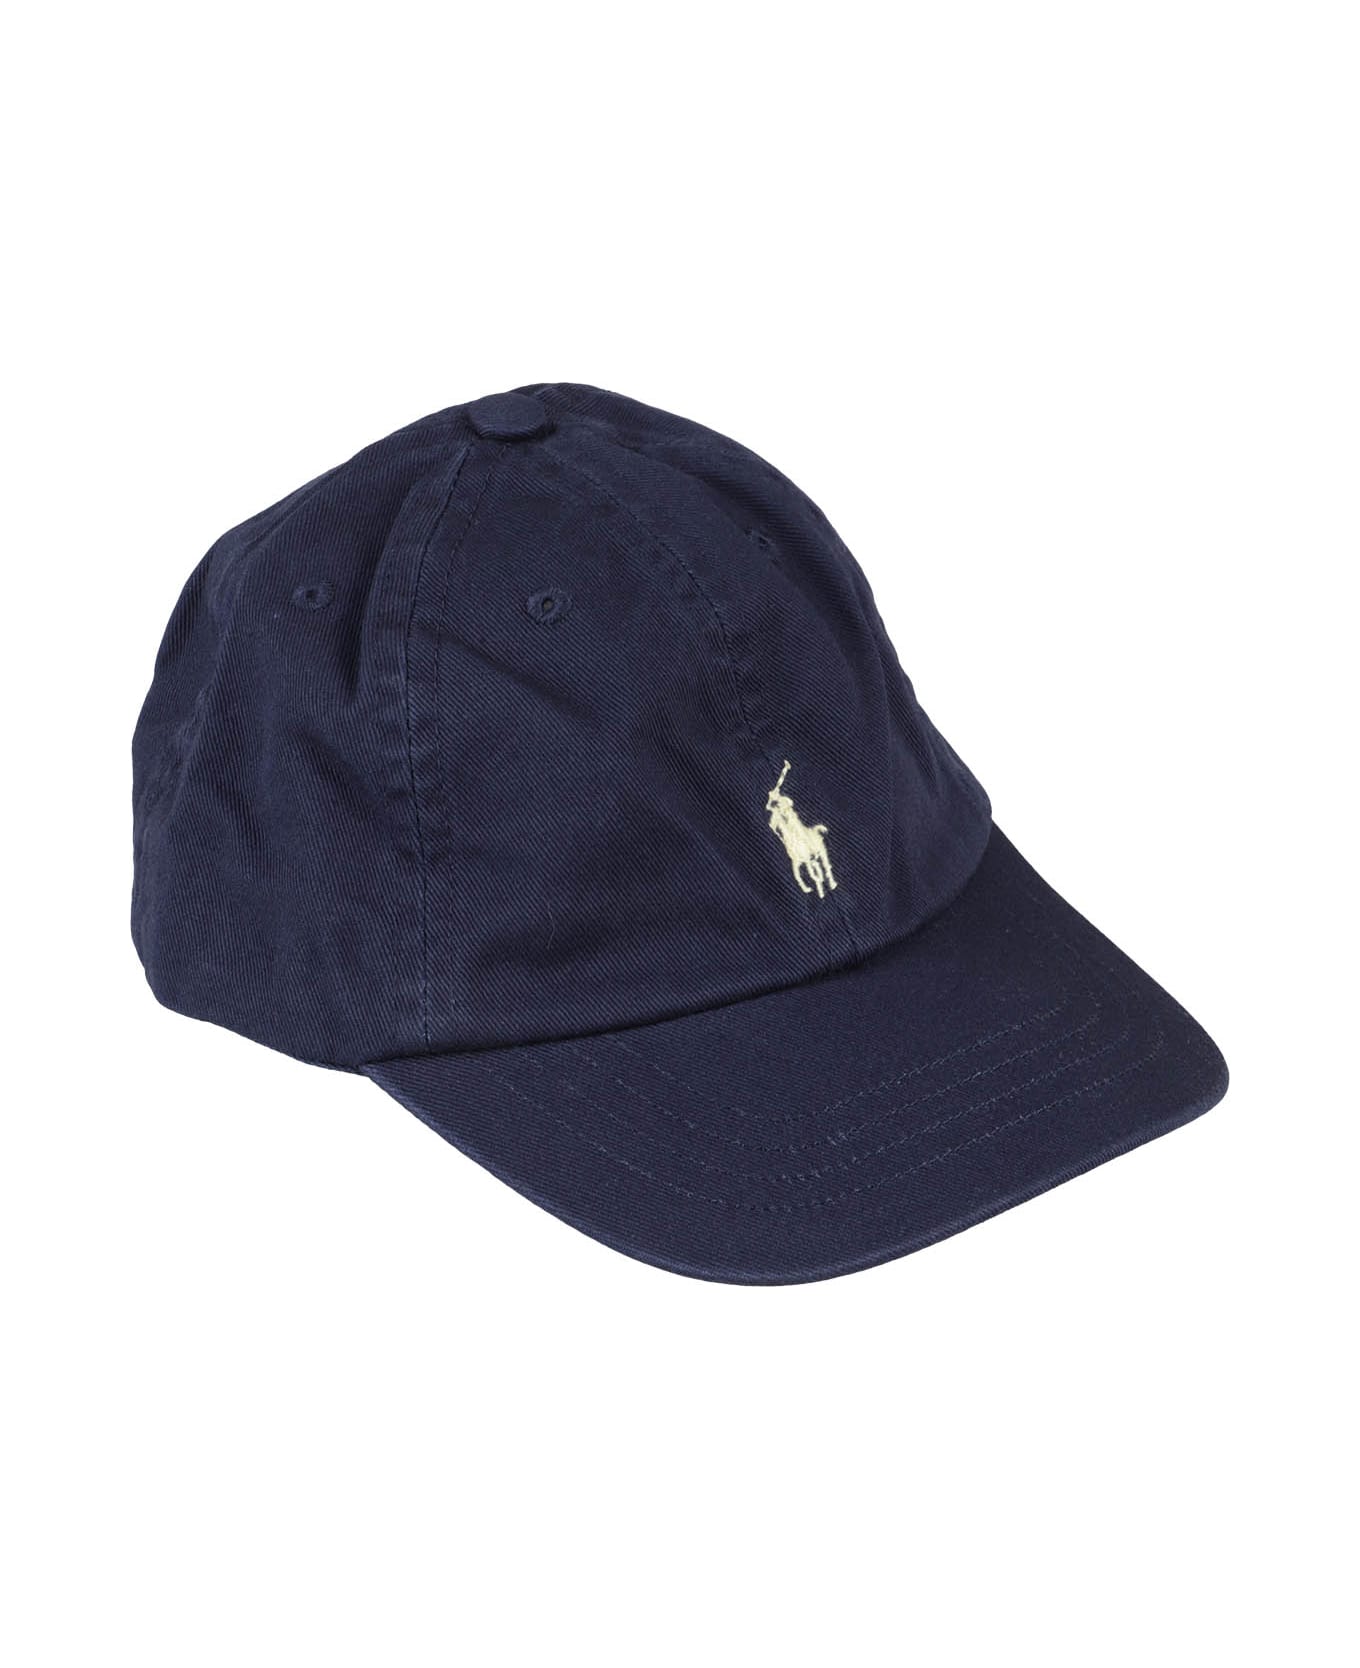 Polo Ralph Lauren Hat - Navy アクセサリー＆ギフト